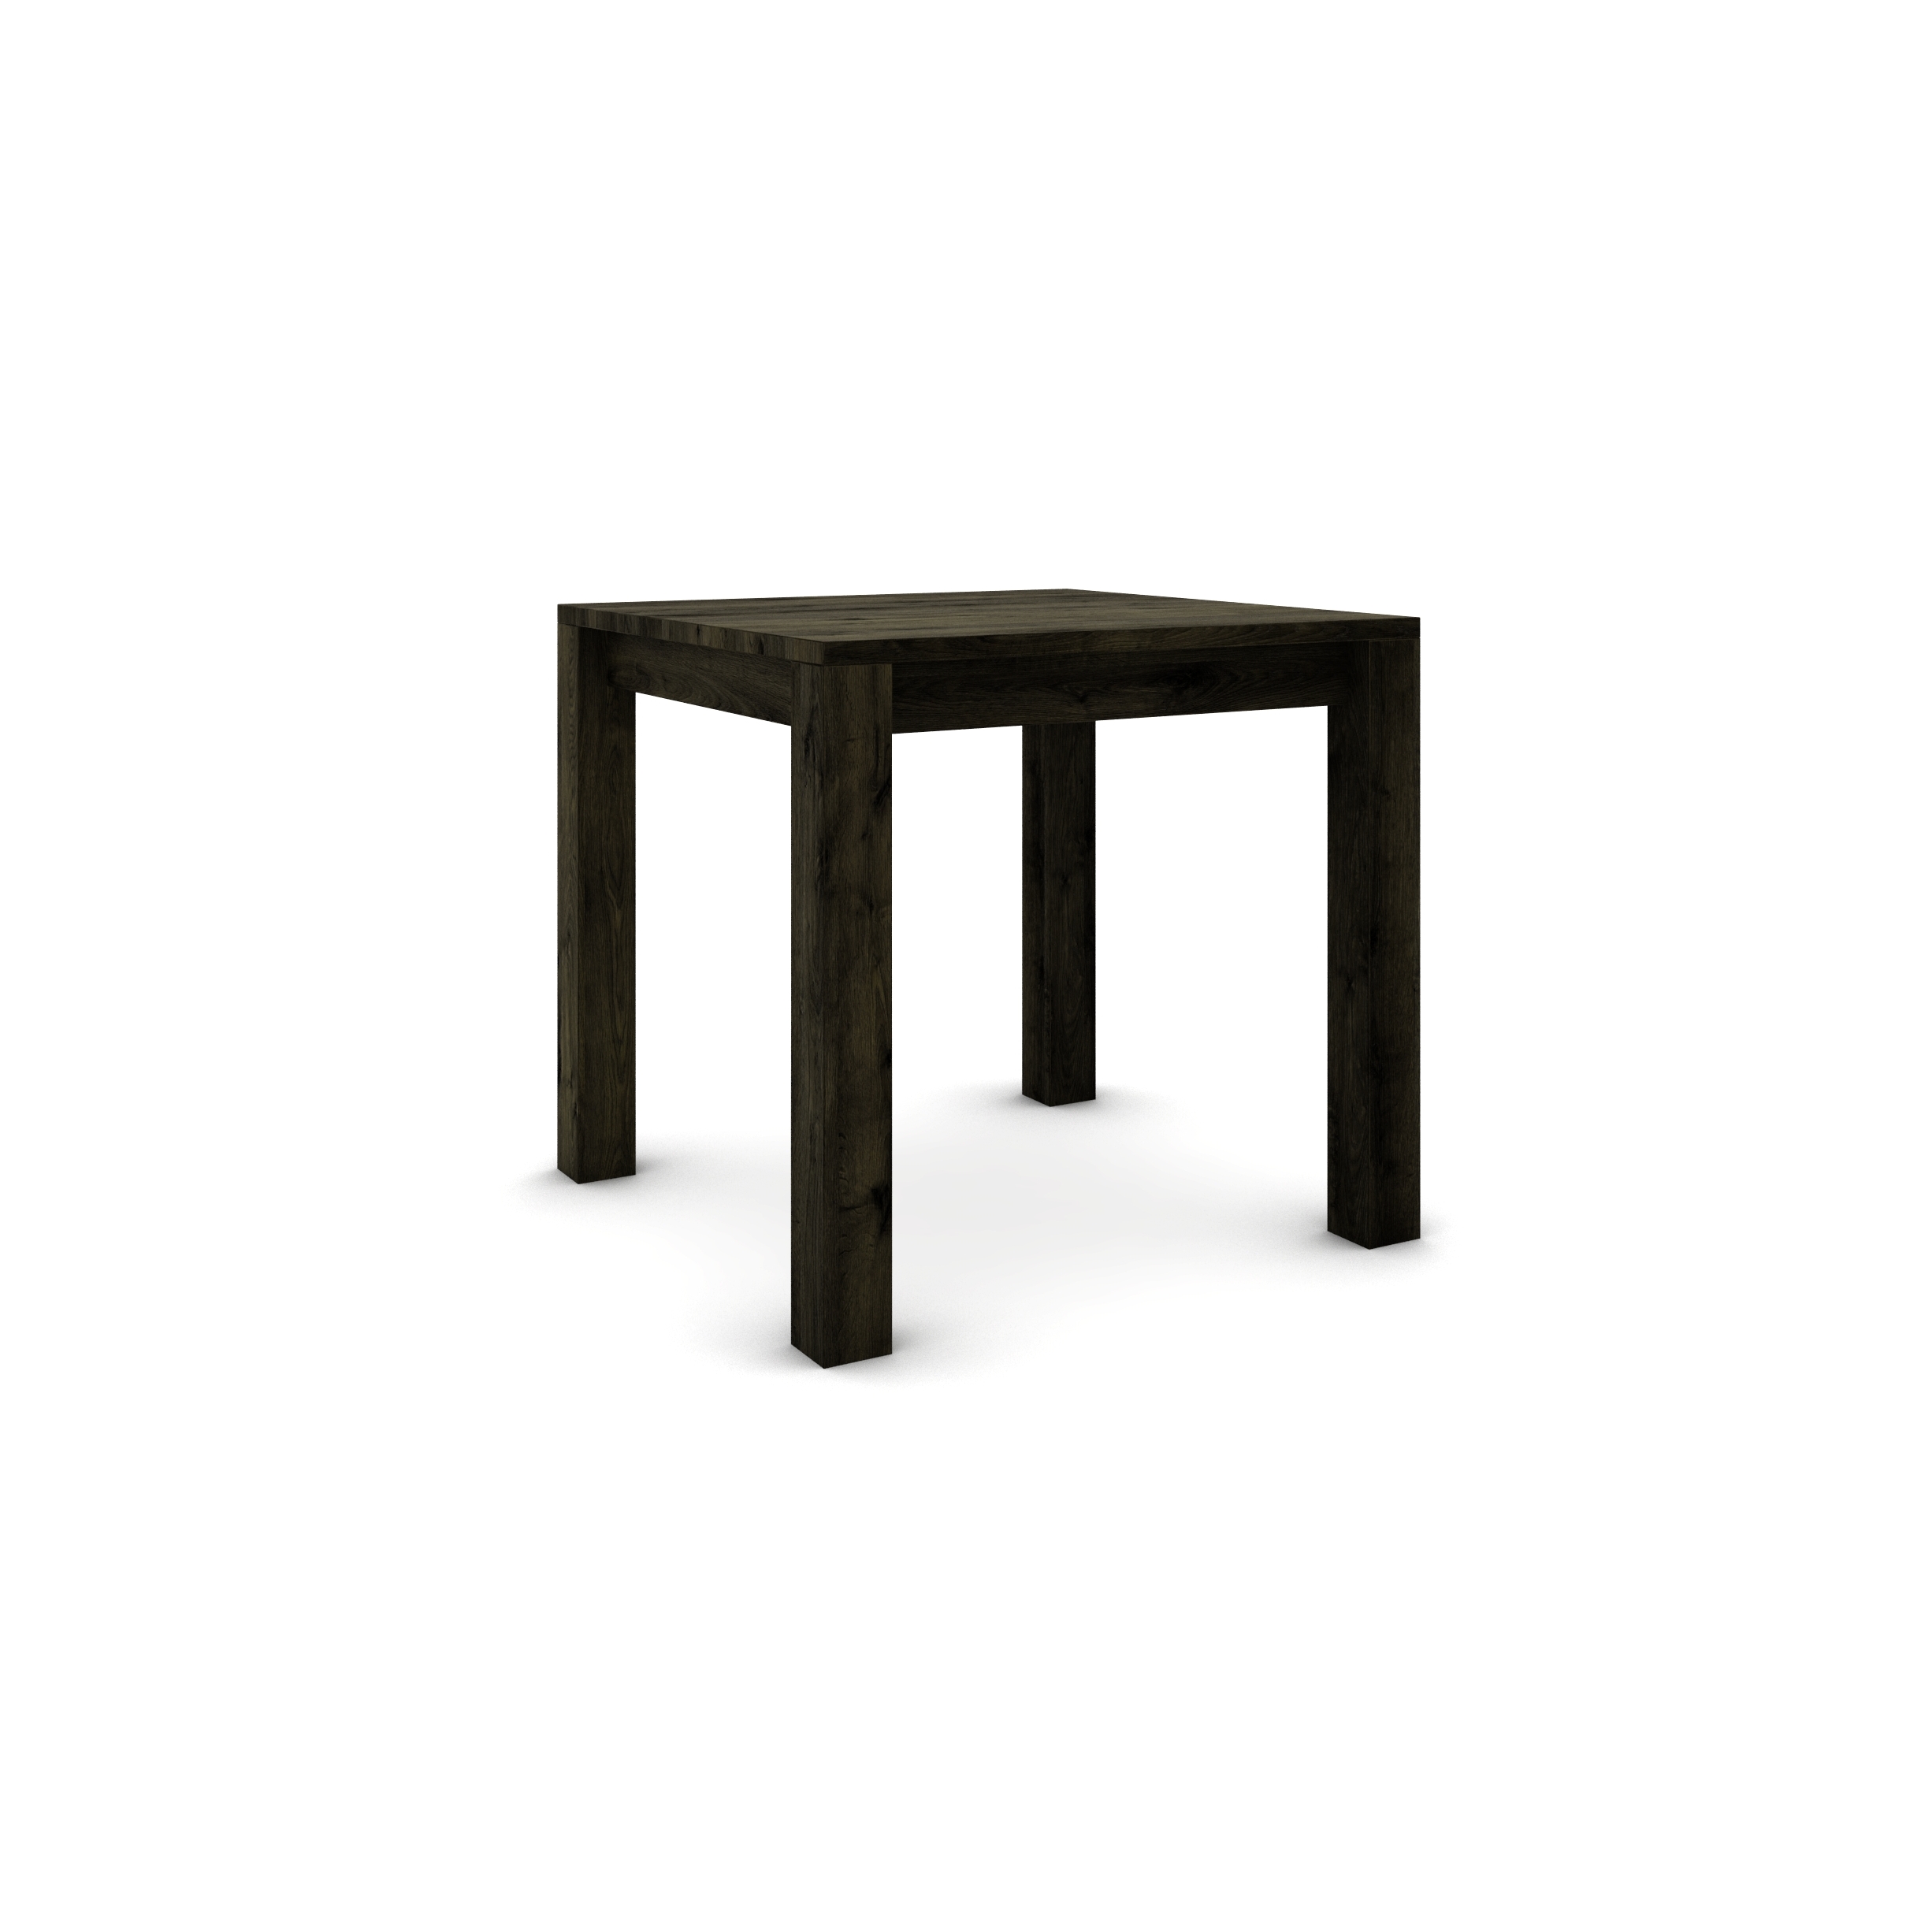 Dubový stôl 80 x 80 cm , čierny so strieborným efektom